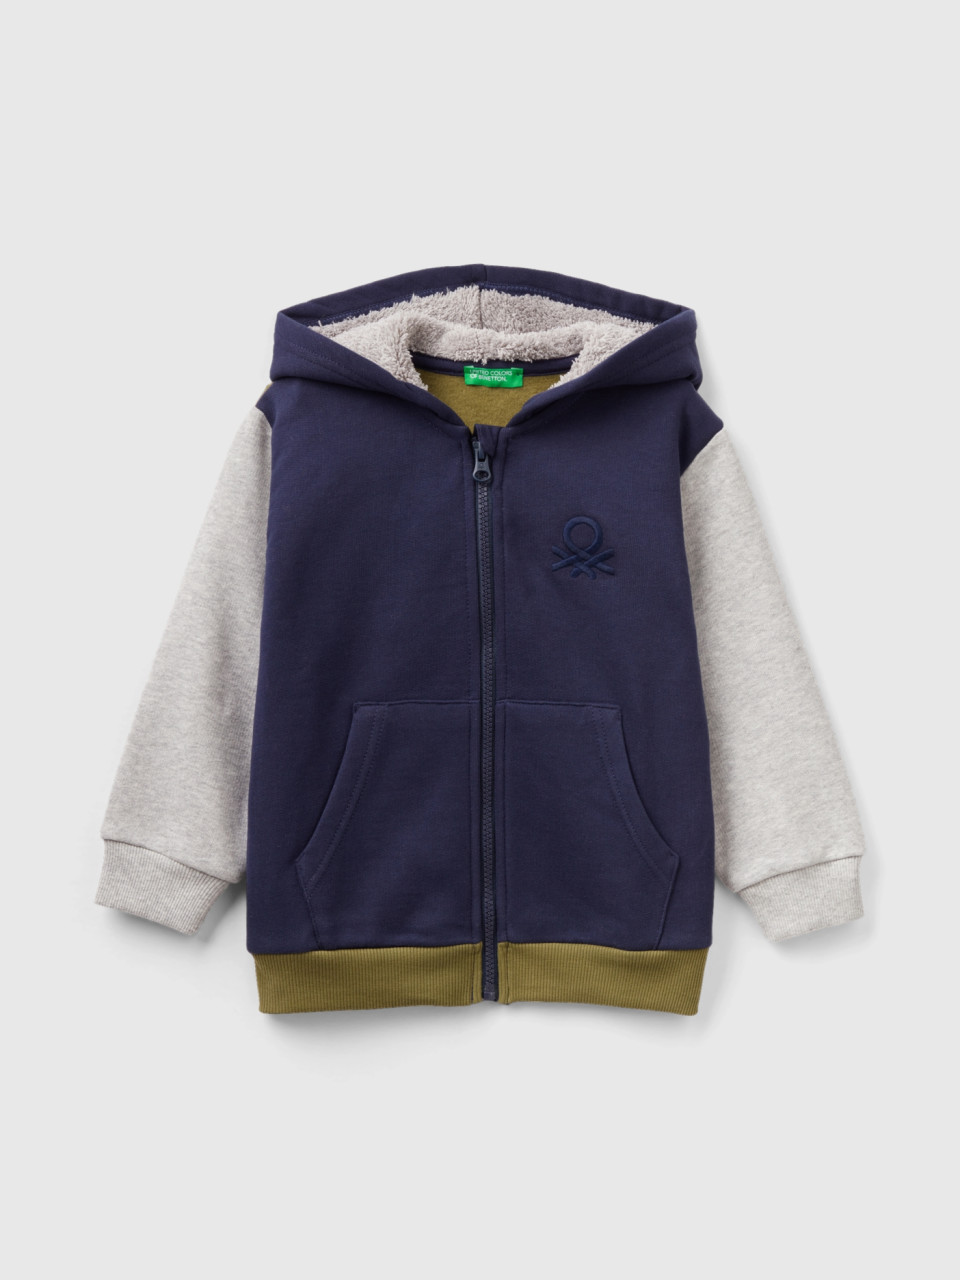 Benetton, Sweatshirt With Lined Hood, Multi-color, Kids